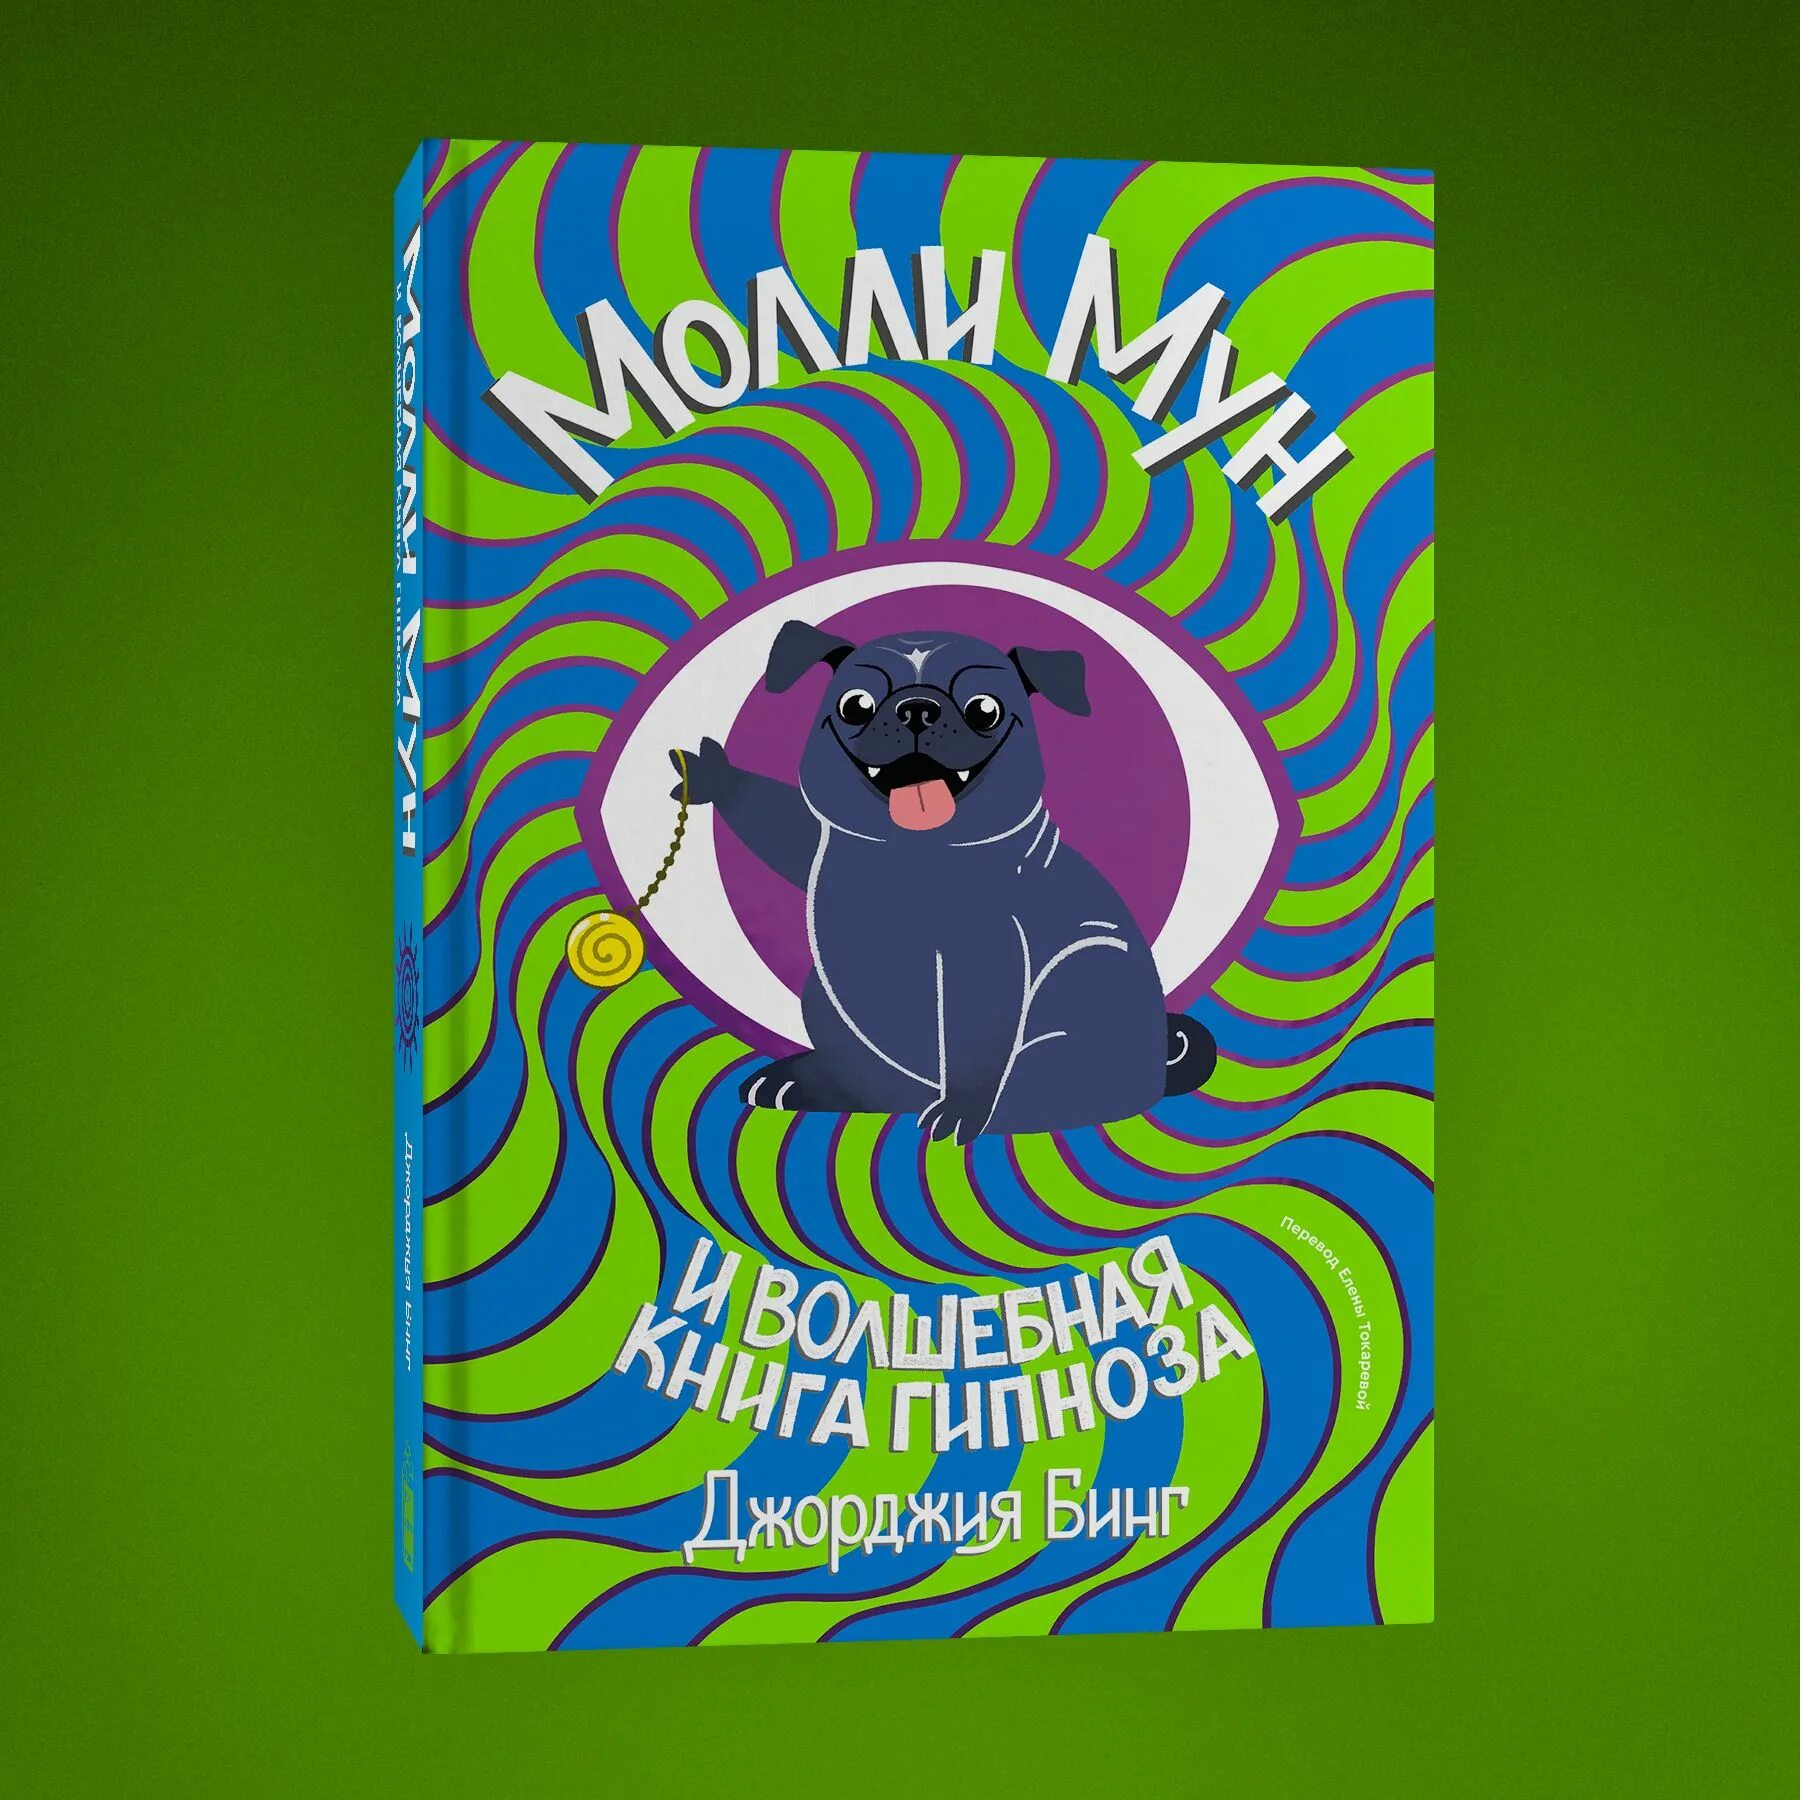 Джорджия бинг Молли Мун. Молли Мун и Волшебная книга гипноза (2015). Молли Мун книги. Молли мун и книга гипноза